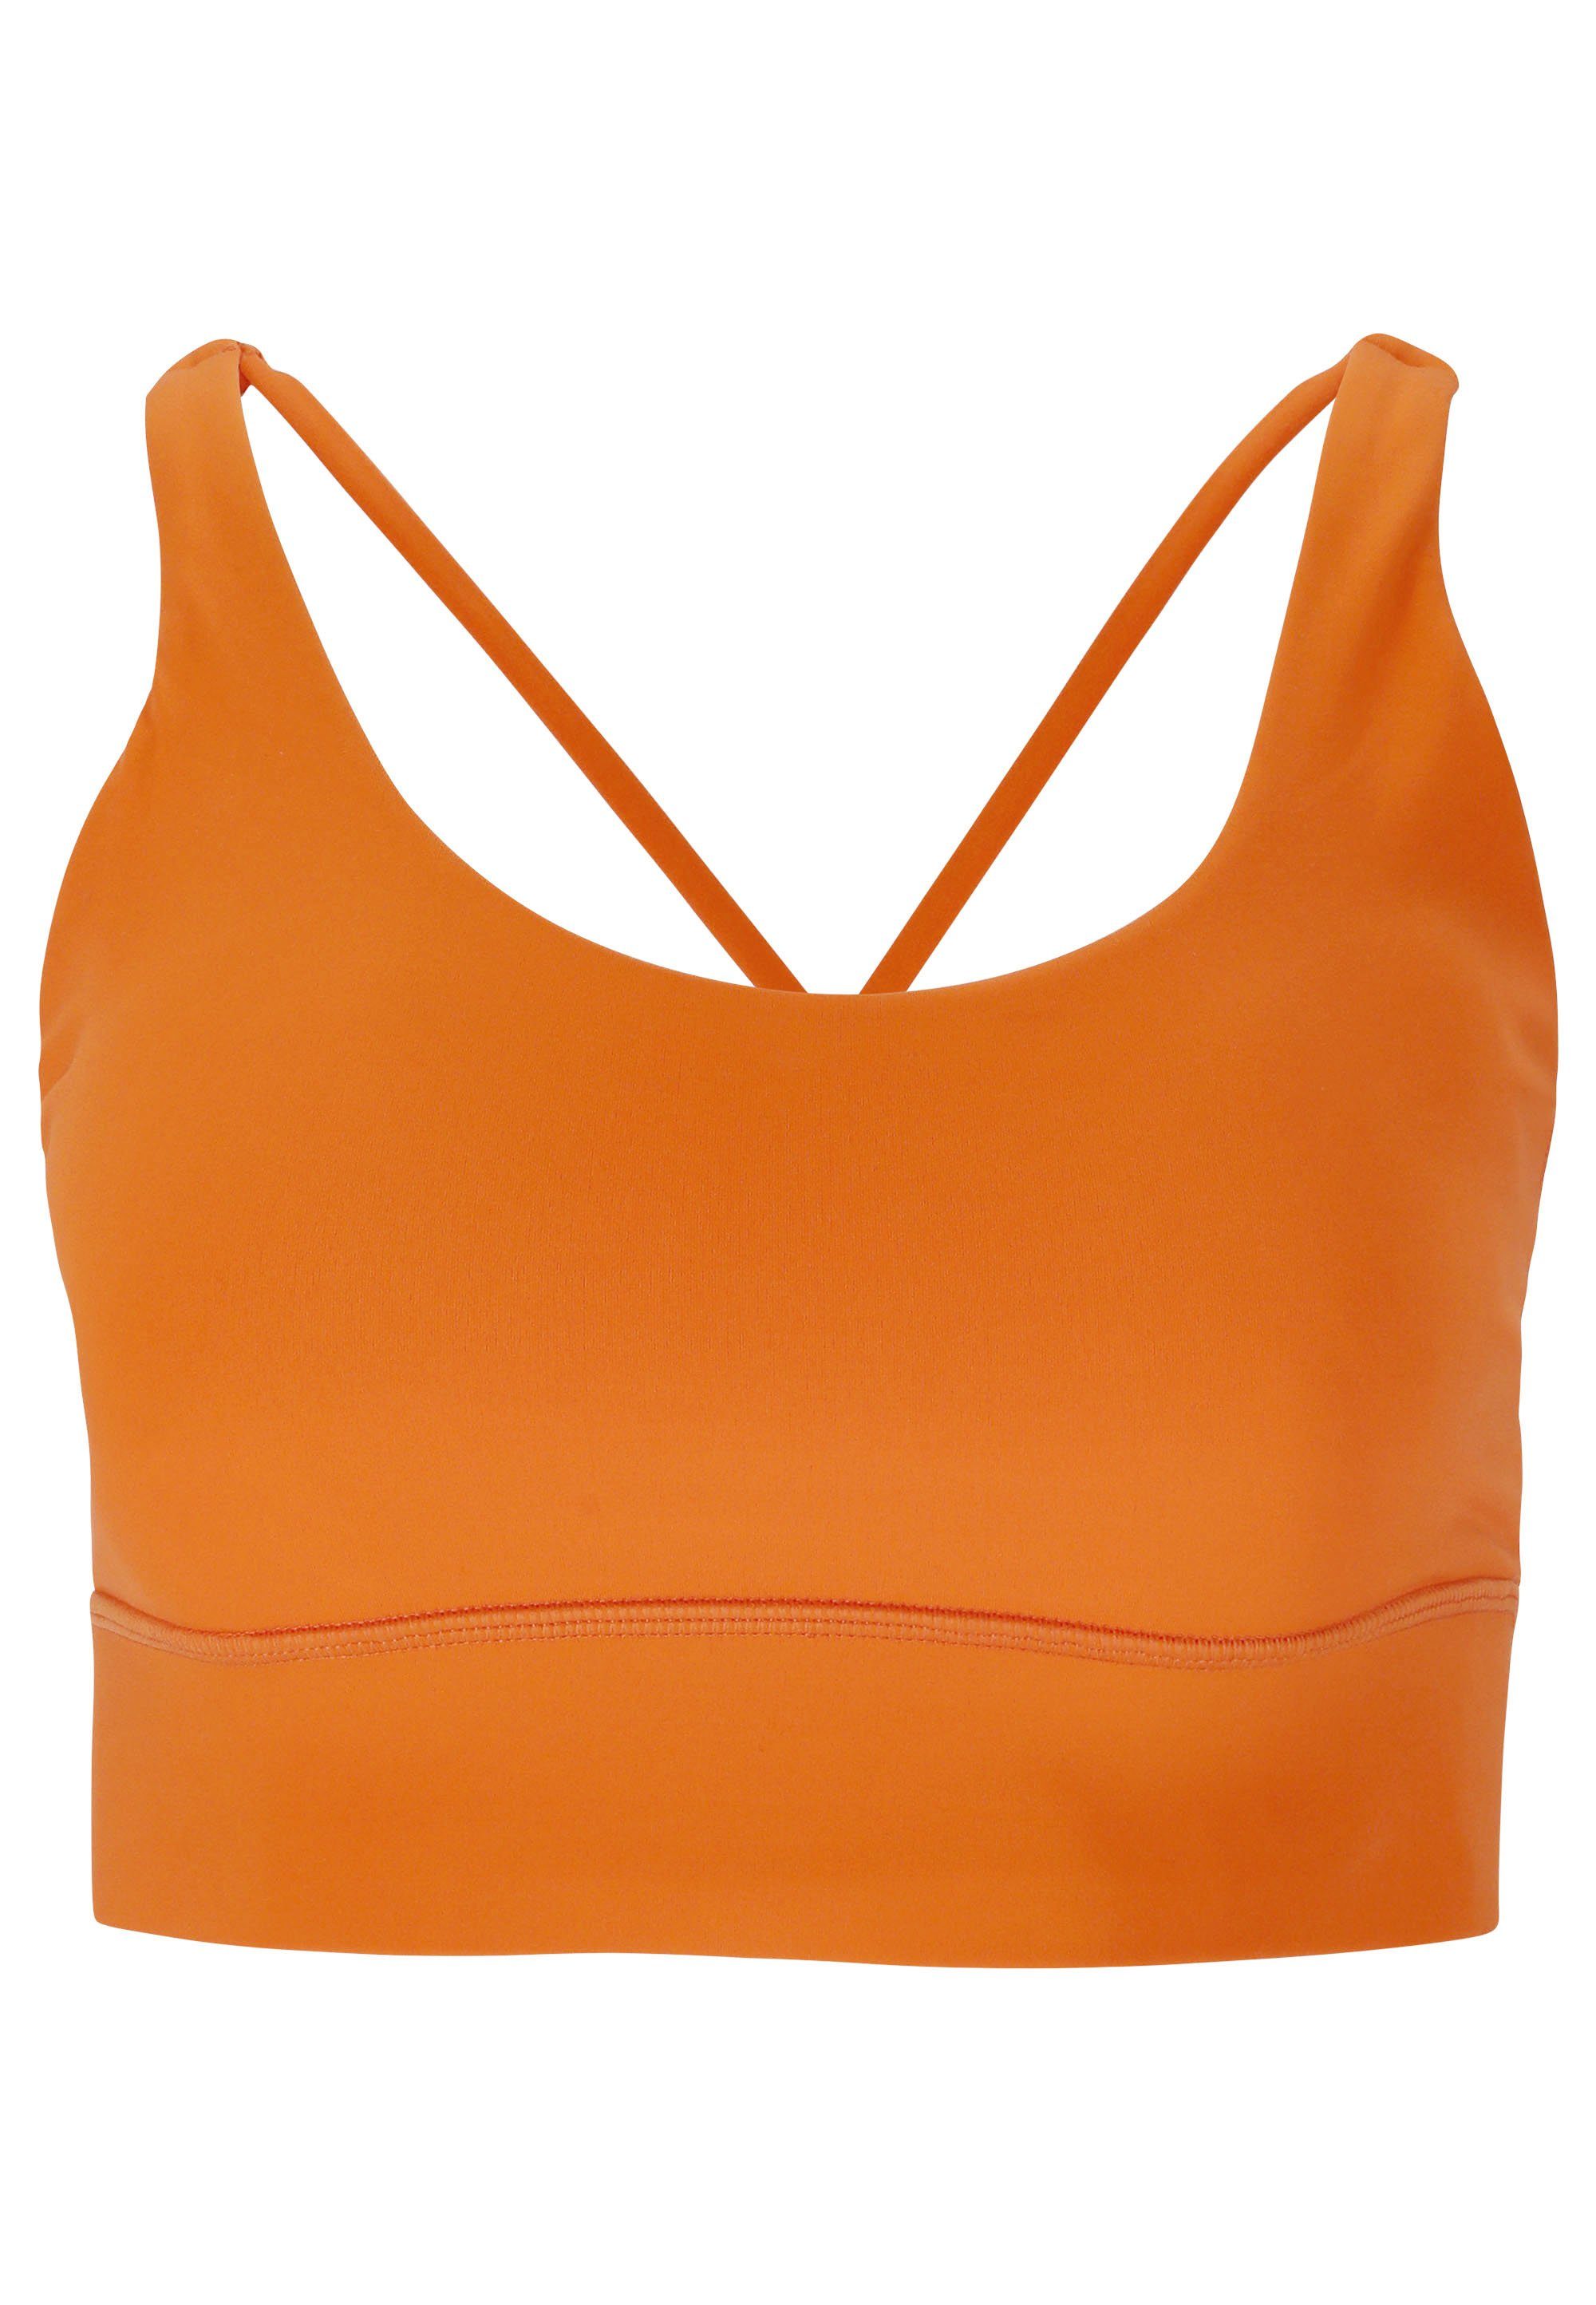 ATHLECIA Sport-BH Gaby aus orange Material feuchtigkeitsregulierendem